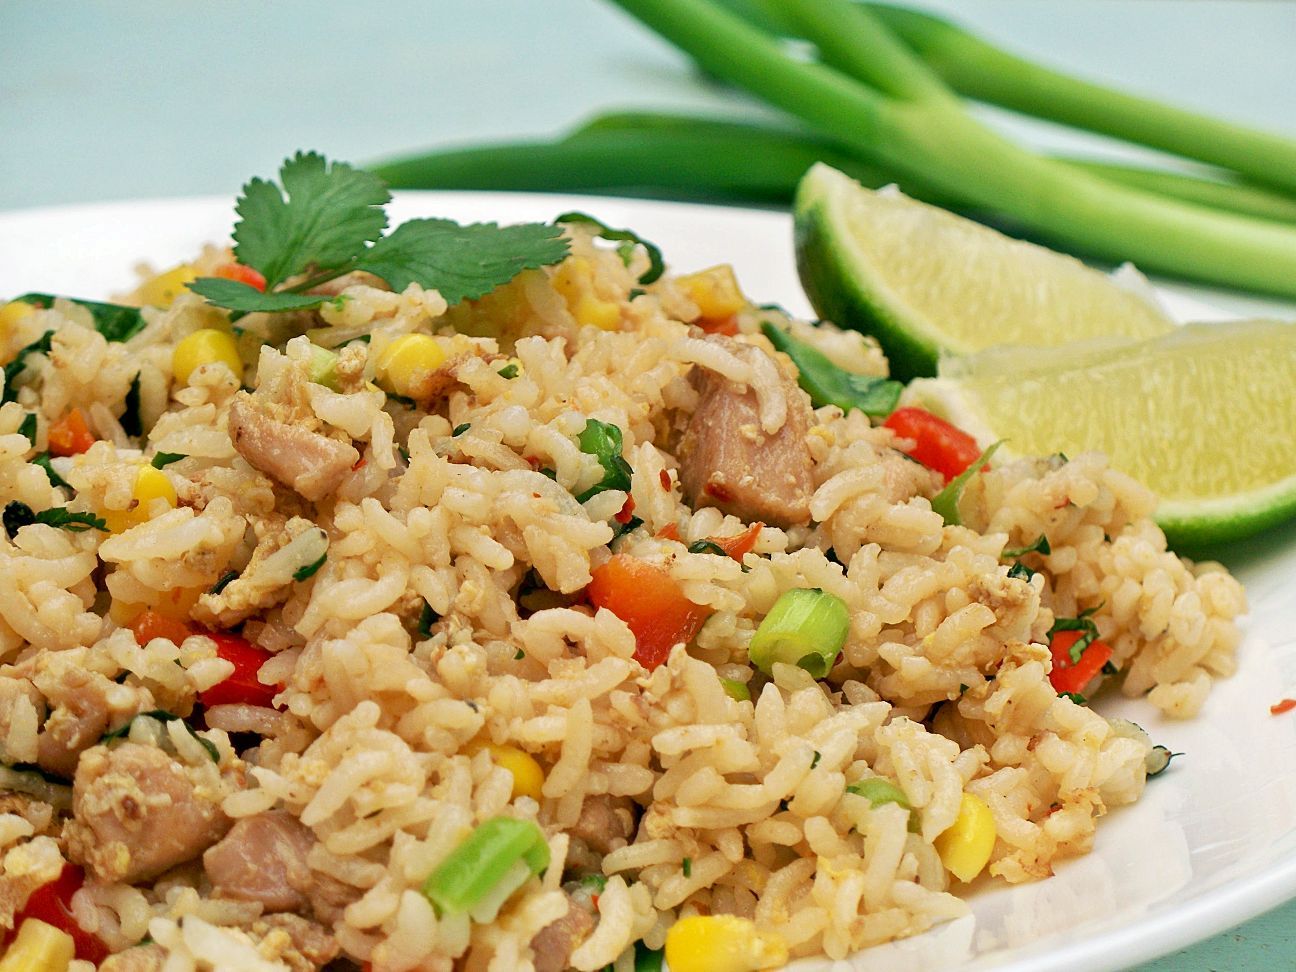 Рис и лапша в тайской кухне (фото) — блог милы